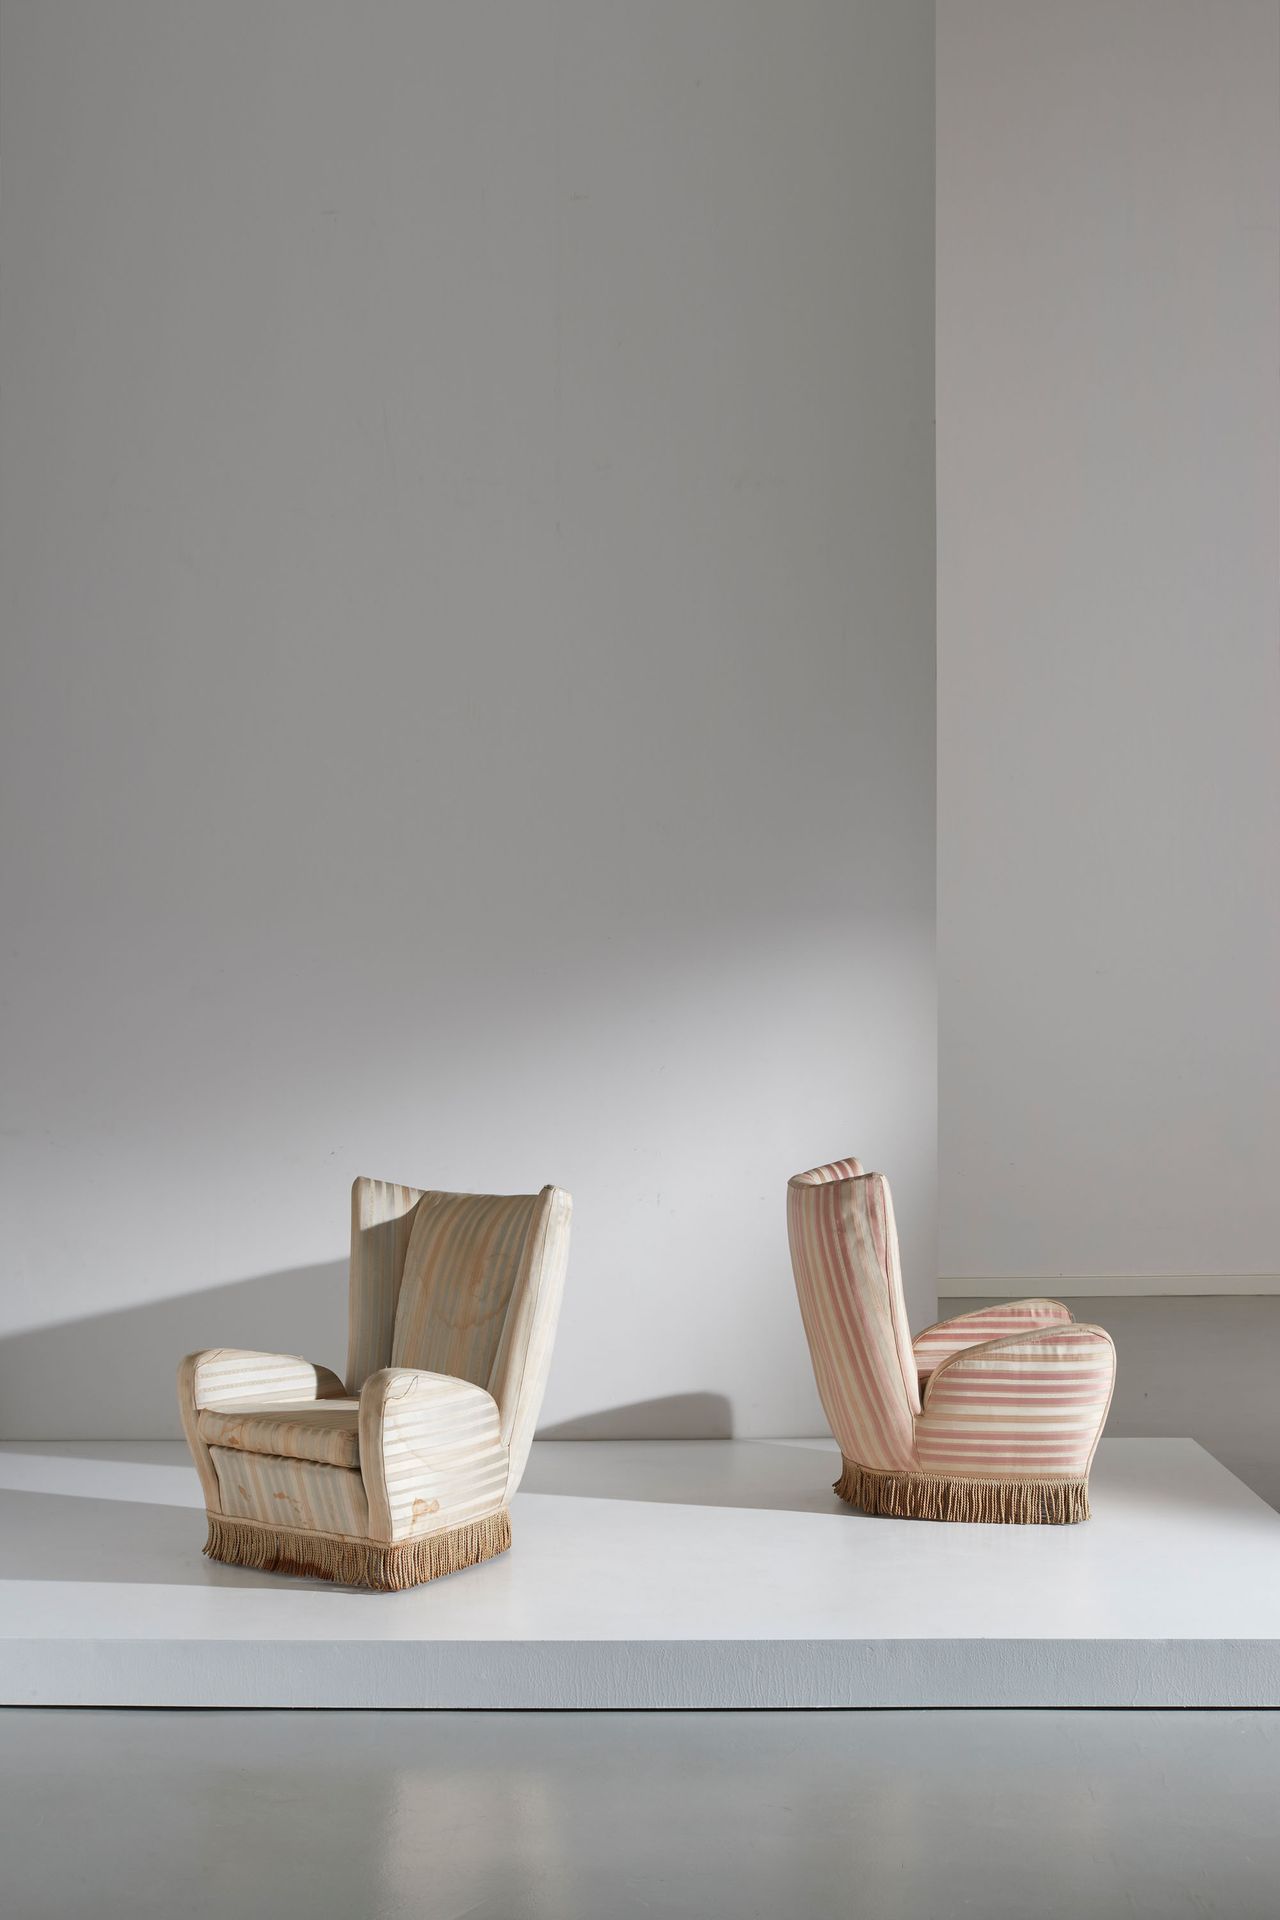 PAOLO BUFFA (ATTRIB. A) 一对扶手椅。木头，软垫织物。意大利约50年代。
cm 92x70x84
一对属于P. BUFFA的扶手椅



&hellip;